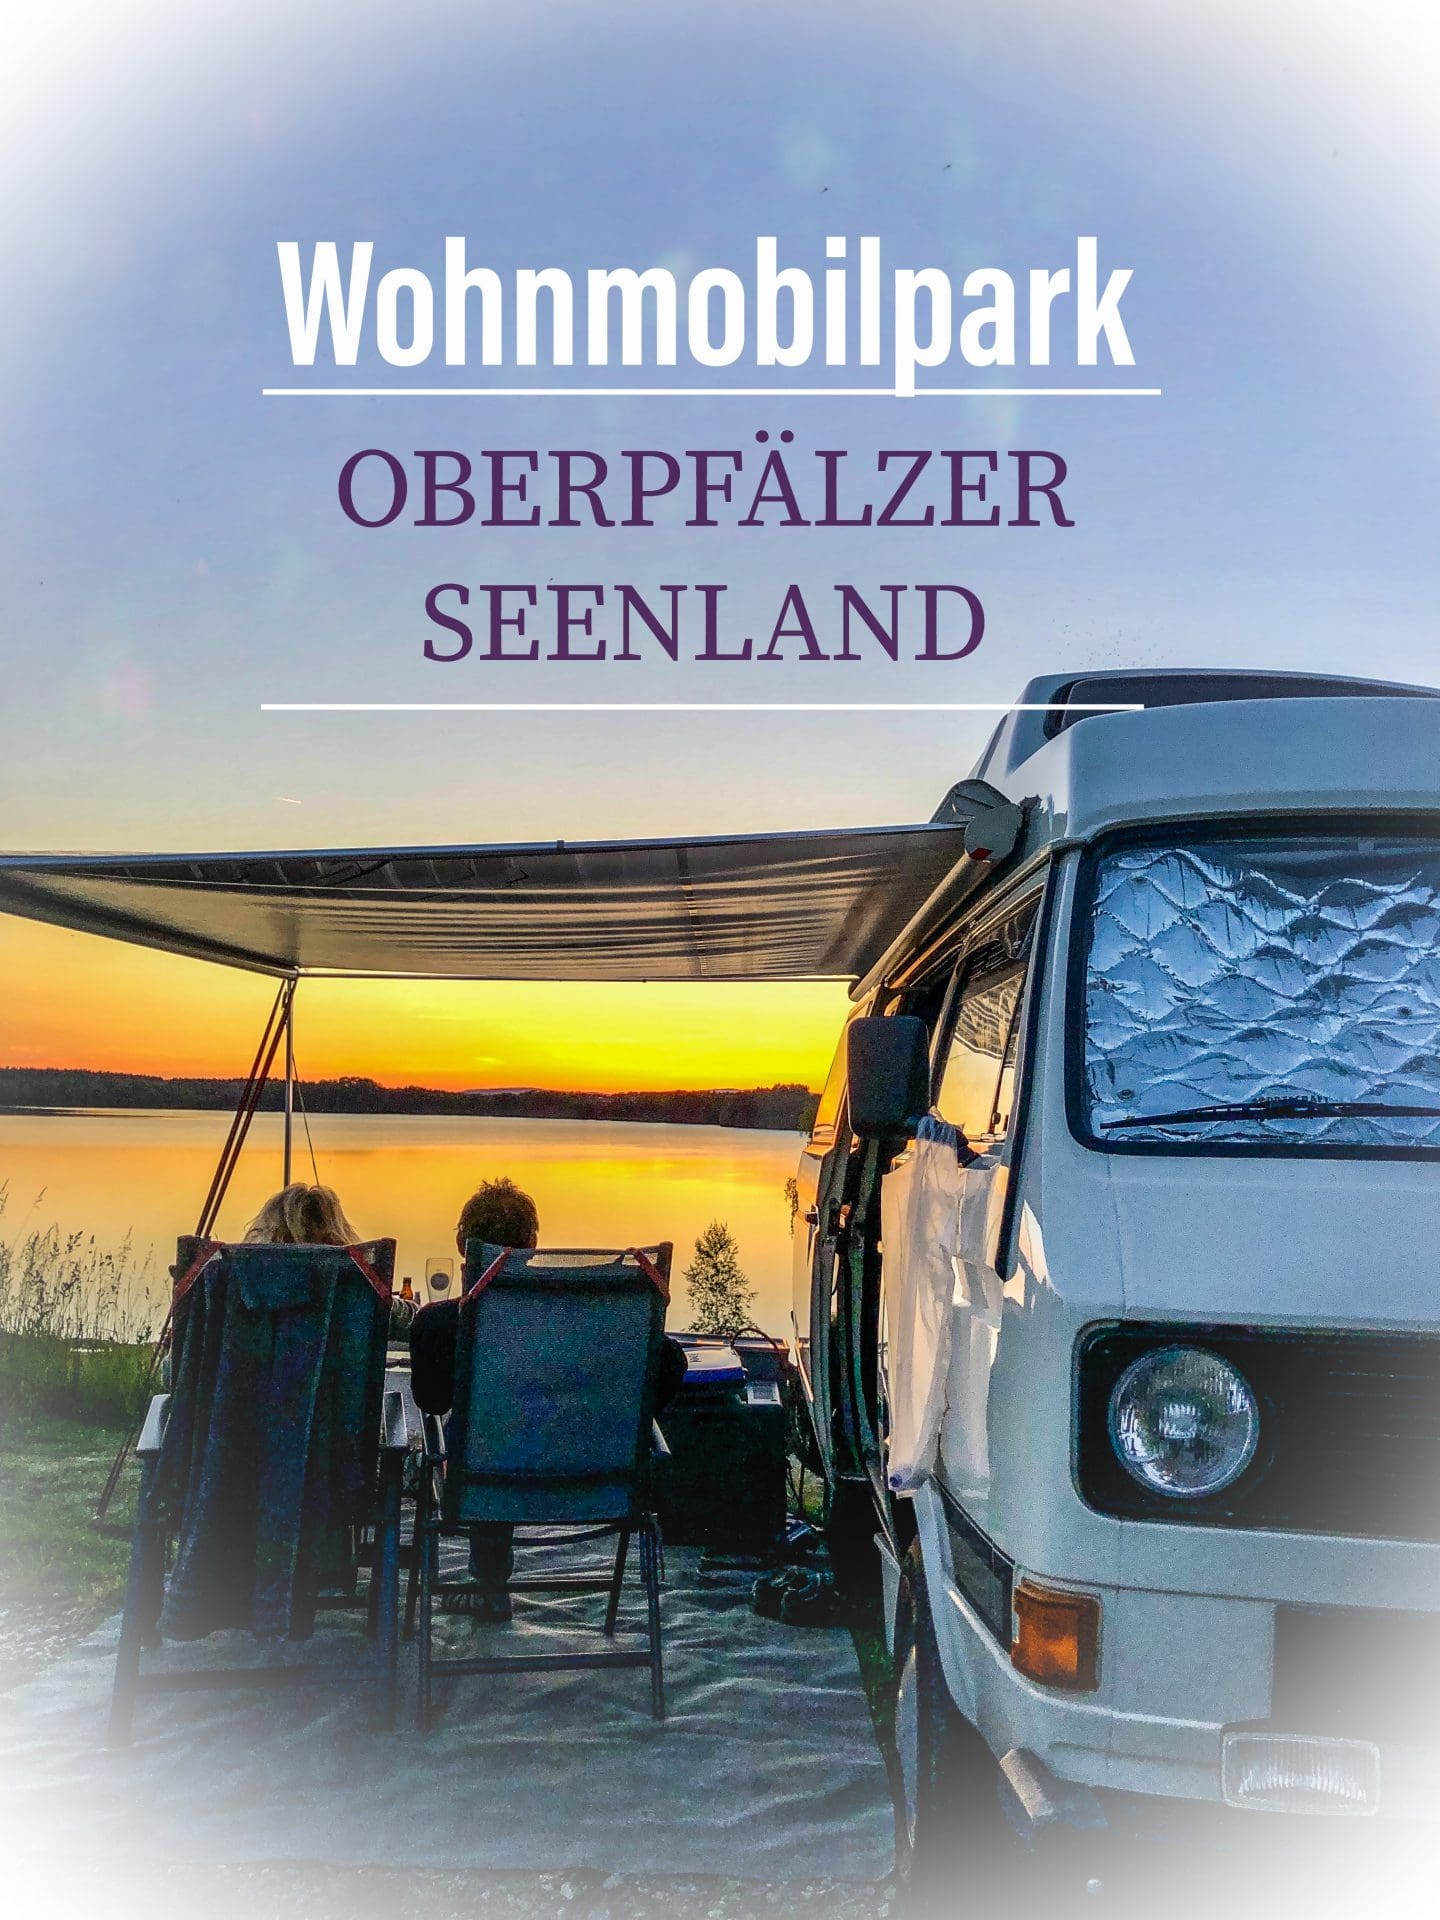 Dies ist das Logo unseres Benefitpartners Wohnmobilpark Oberpfaelzer Seenland